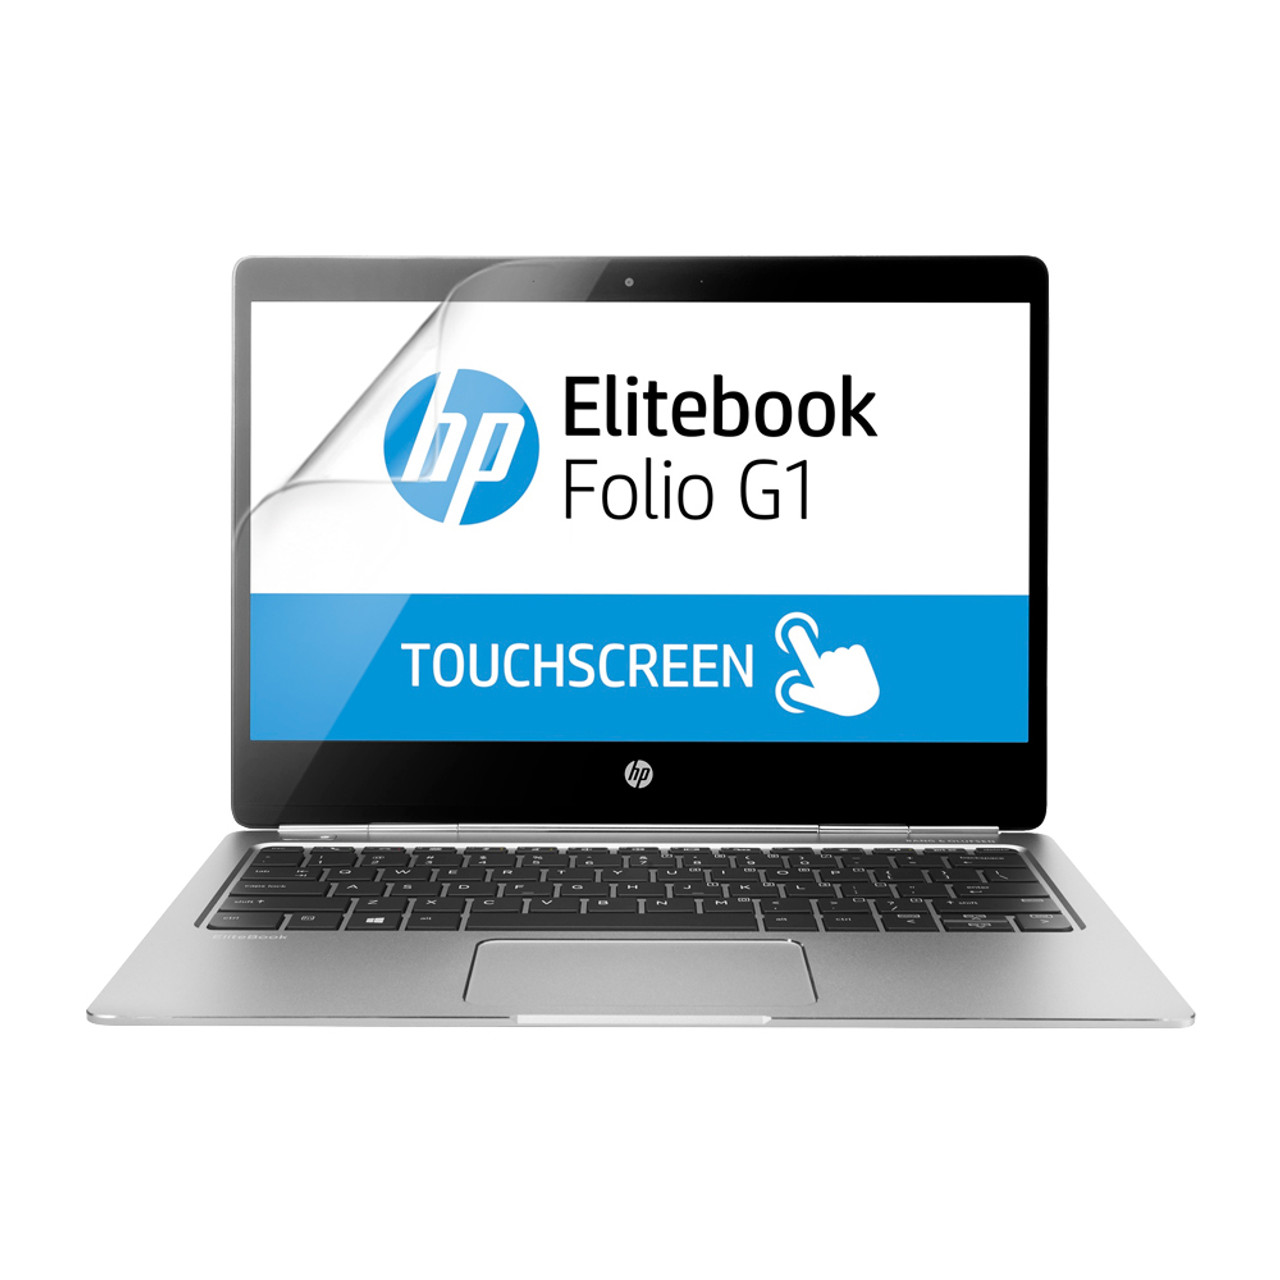 HP EliteBook folio G1